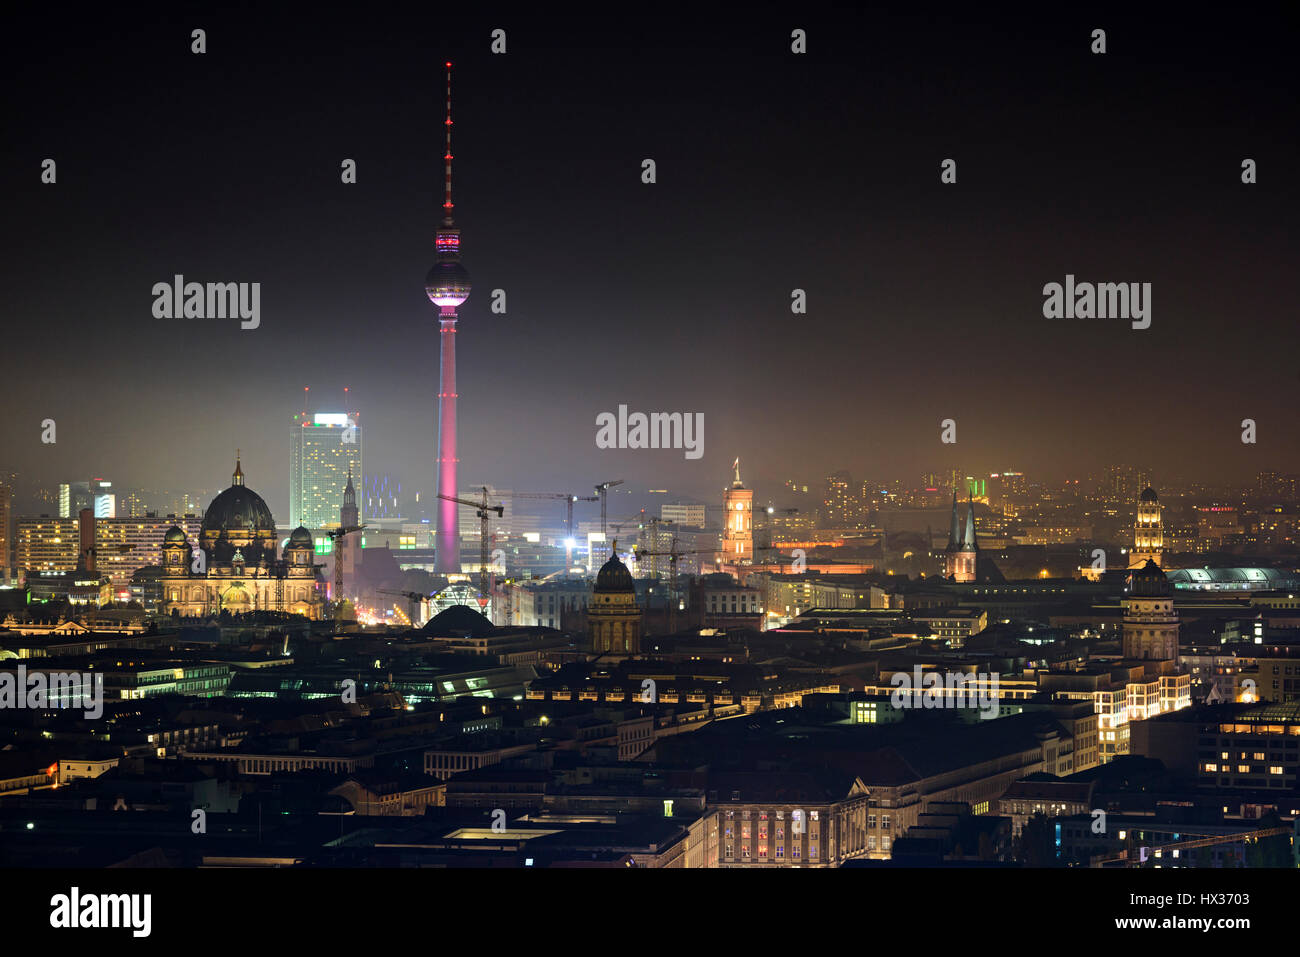 Berlin by night skyline. Vue sur la ville, avec la tour de télévision, l'Hôtel de ville rouge, Cathédrale, Cathédrale française et cathédrale allemande. Berlin, Allemagne Banque D'Images